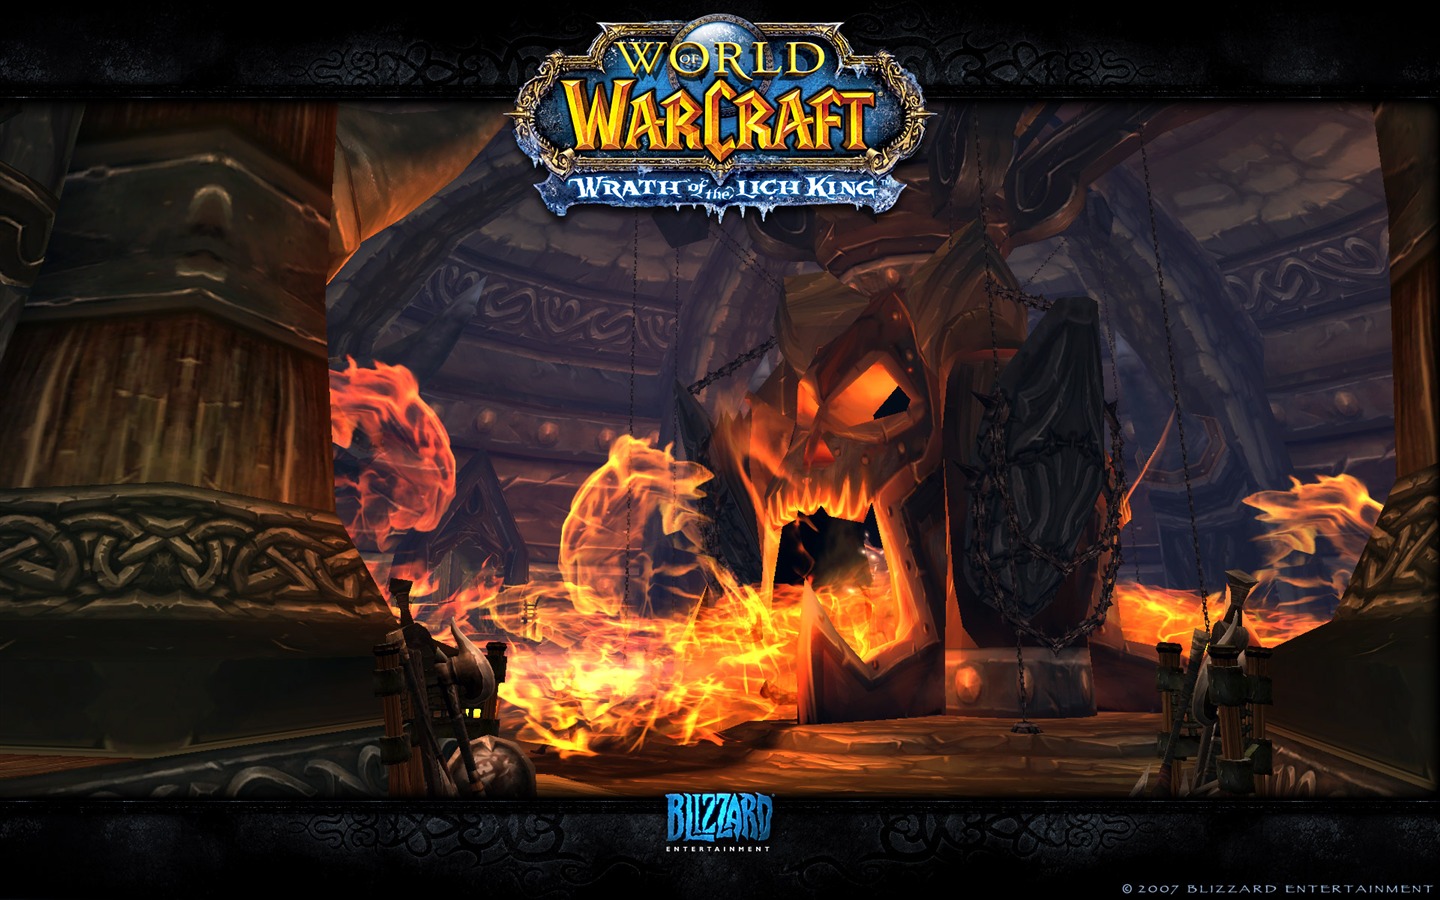 World of Warcraft 魔獸世界高清壁紙(二) #5 - 1440x900